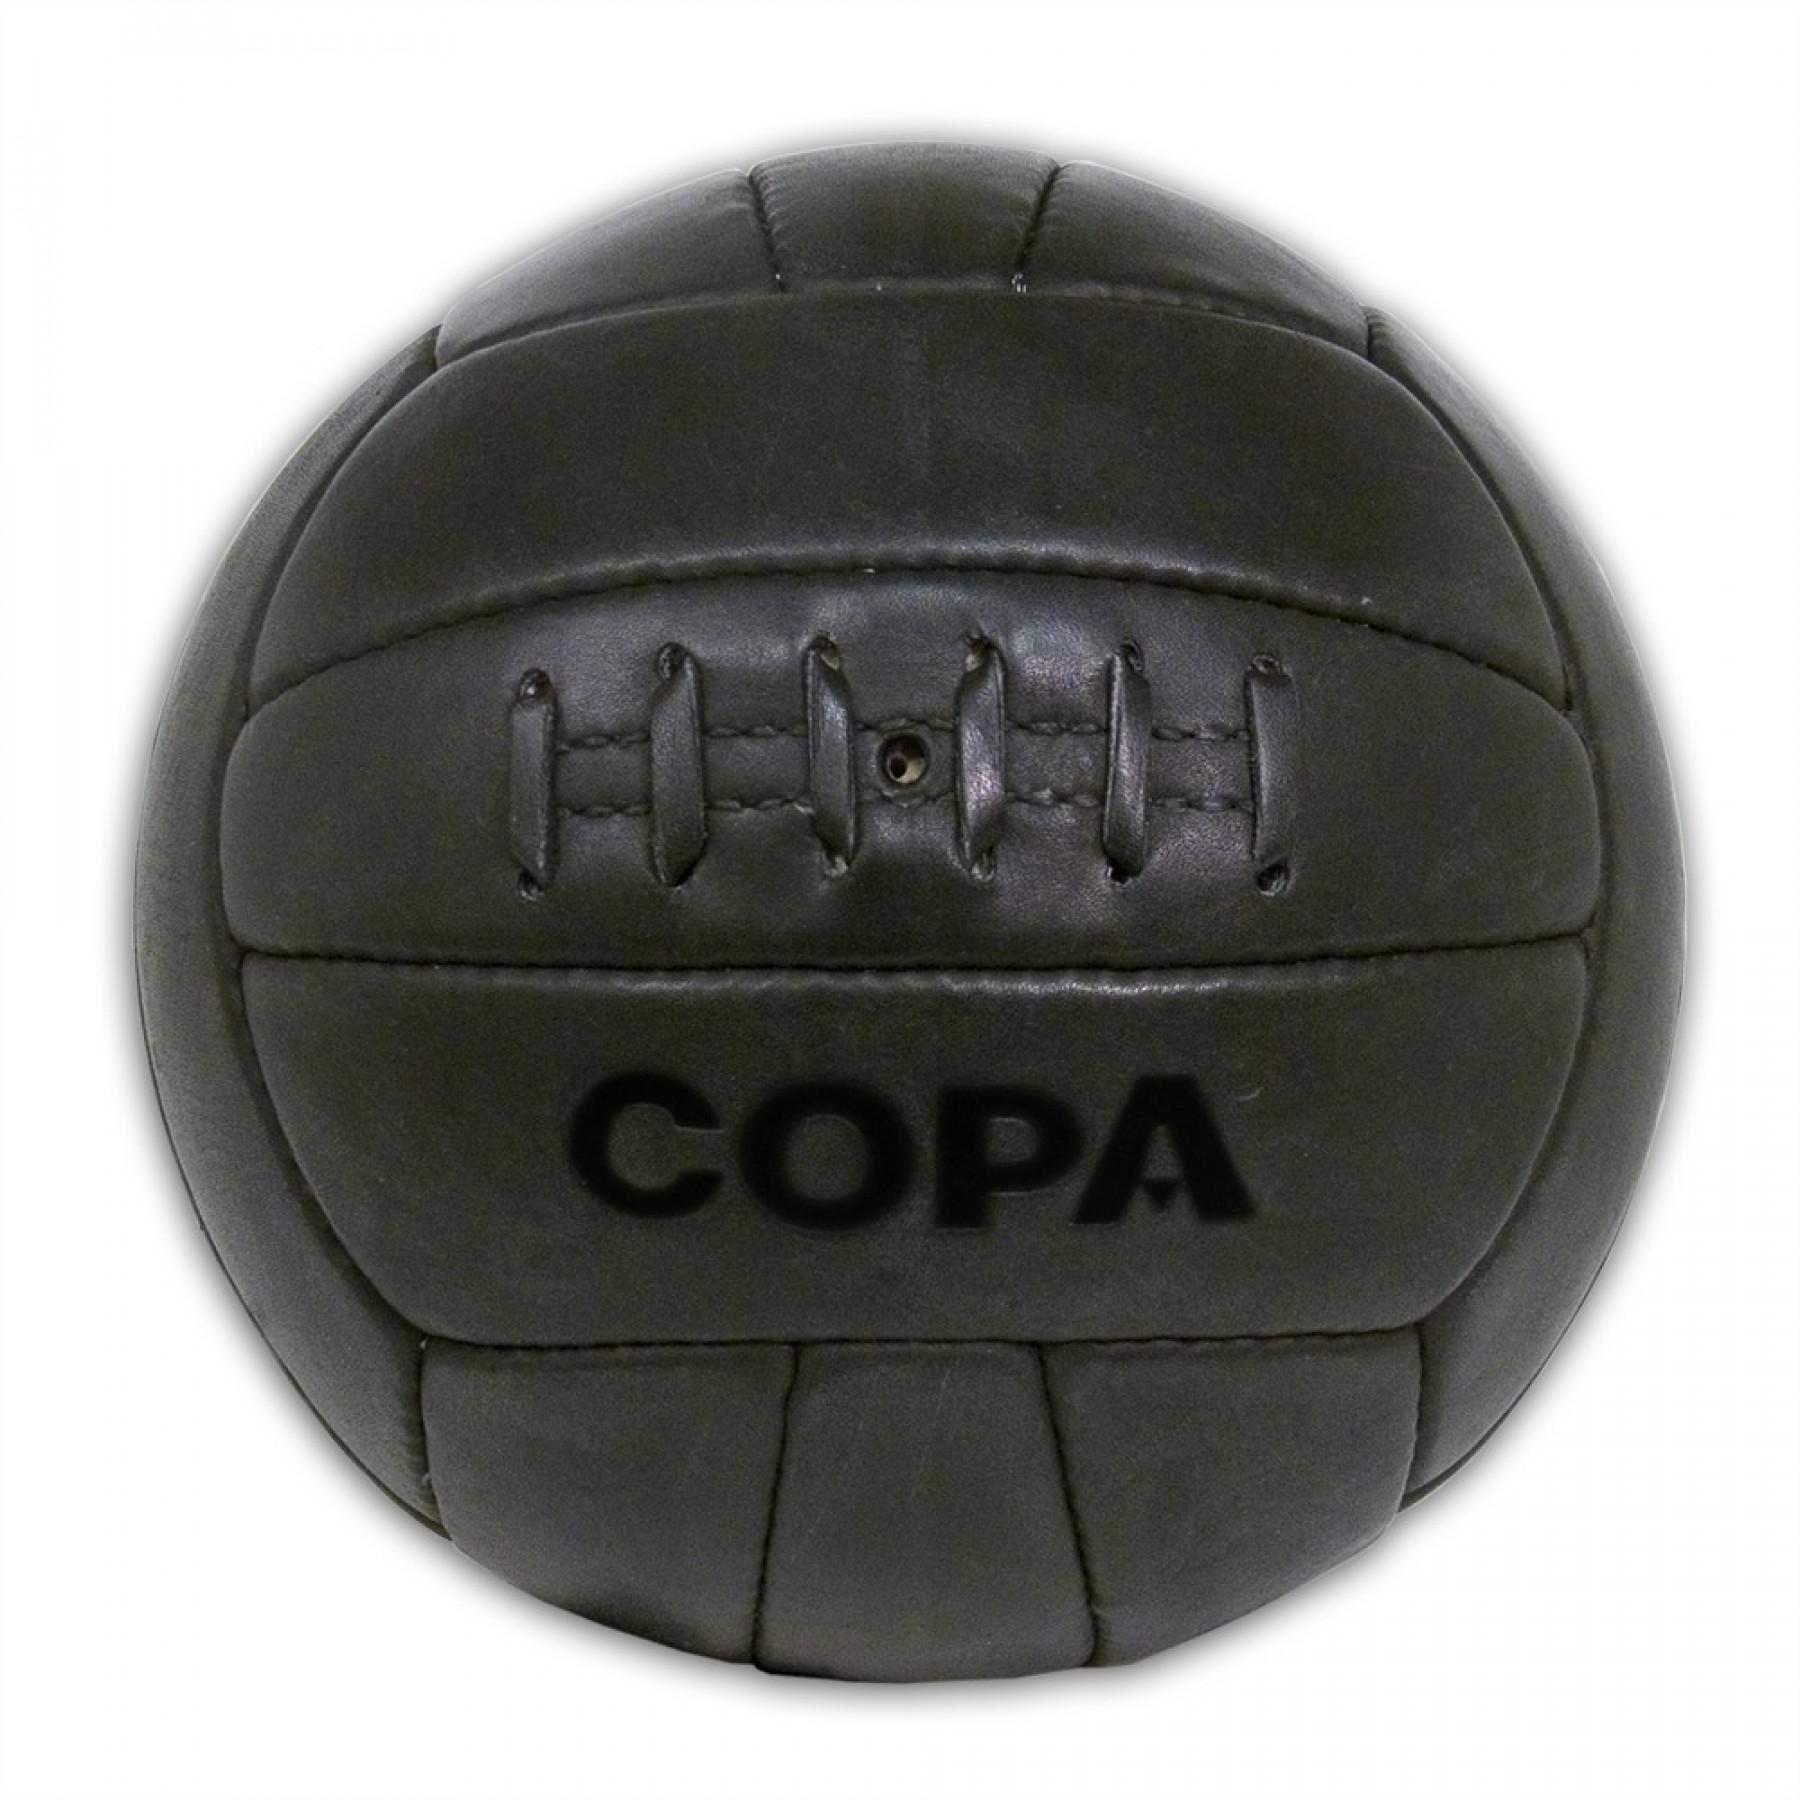 Кожаный мяч купить. Мяч Copa Retro. Кожаный мяч. Кожаный мячик. Мячик футбольный кожаный.